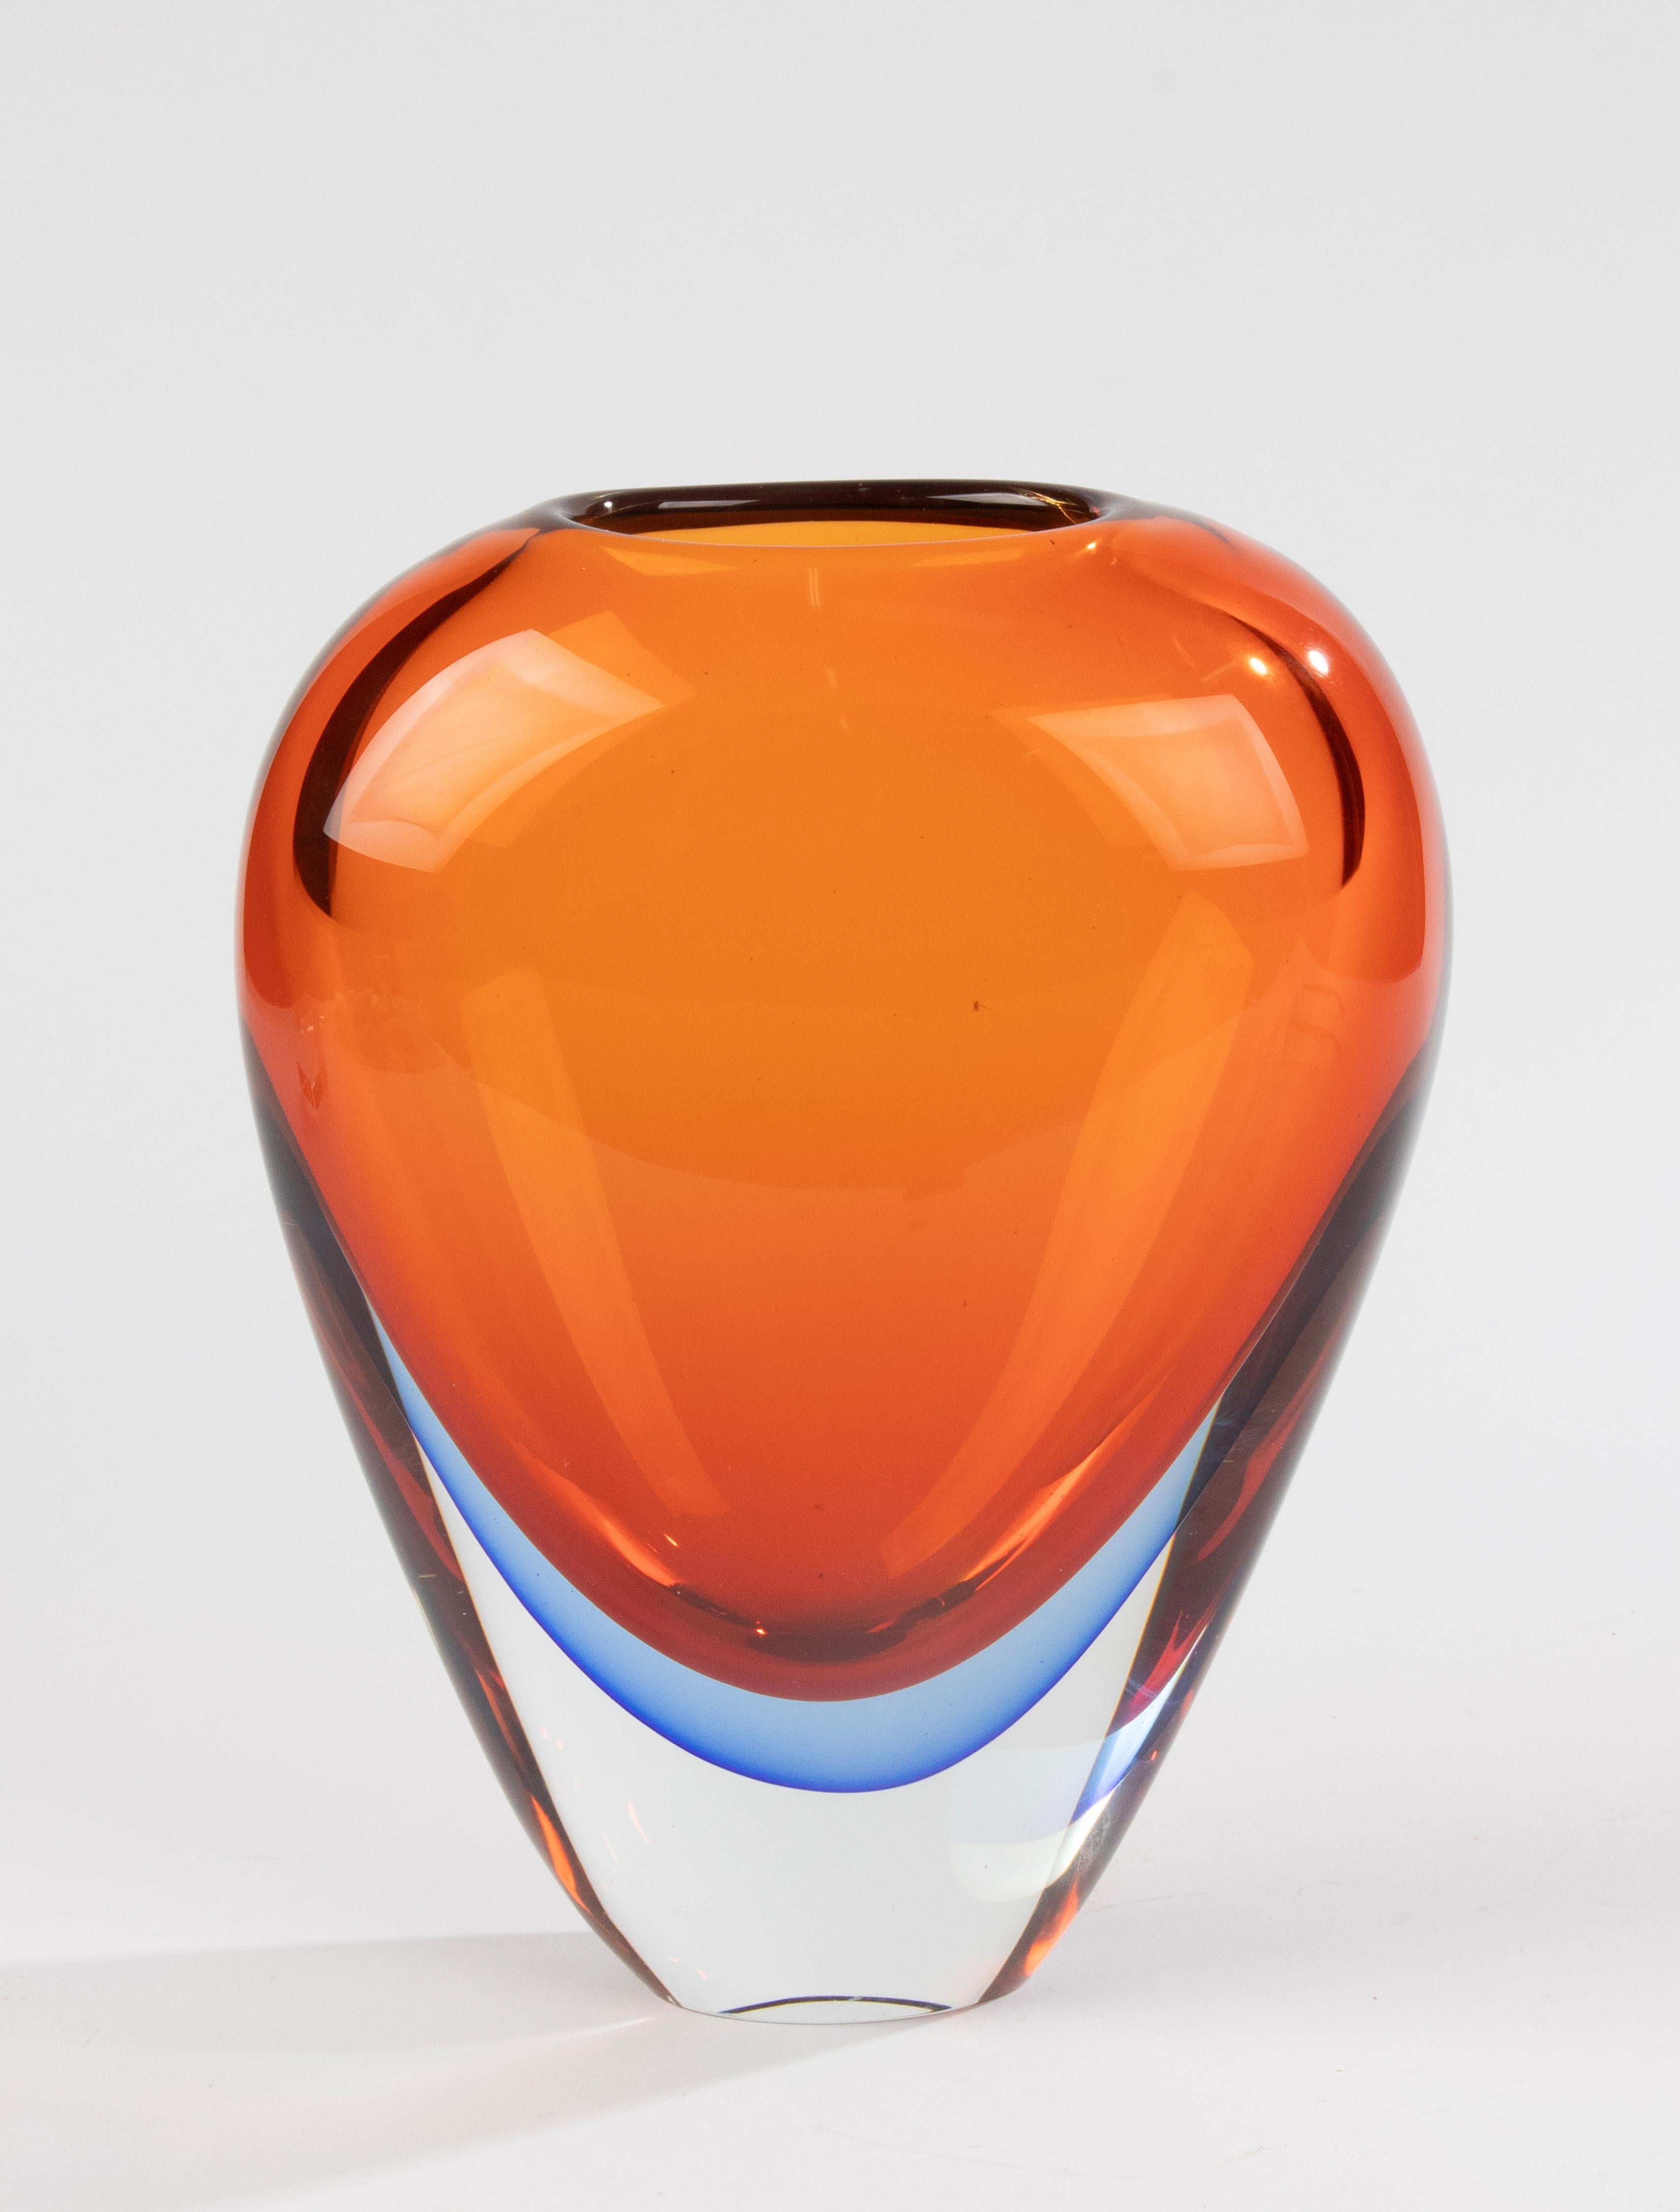 Eine schöne große Vase aus Murano-Glas, die dem italienischen Designer Flavio Poli zugeschrieben wird. 
Die Vase ist in sehr gutem Zustand, keine Chips und keine Feta-Bisse. 
Schöne Farben. 
Schwer und dickwandig

Abmessungen: 20 x 11 cm und 26,5 cm